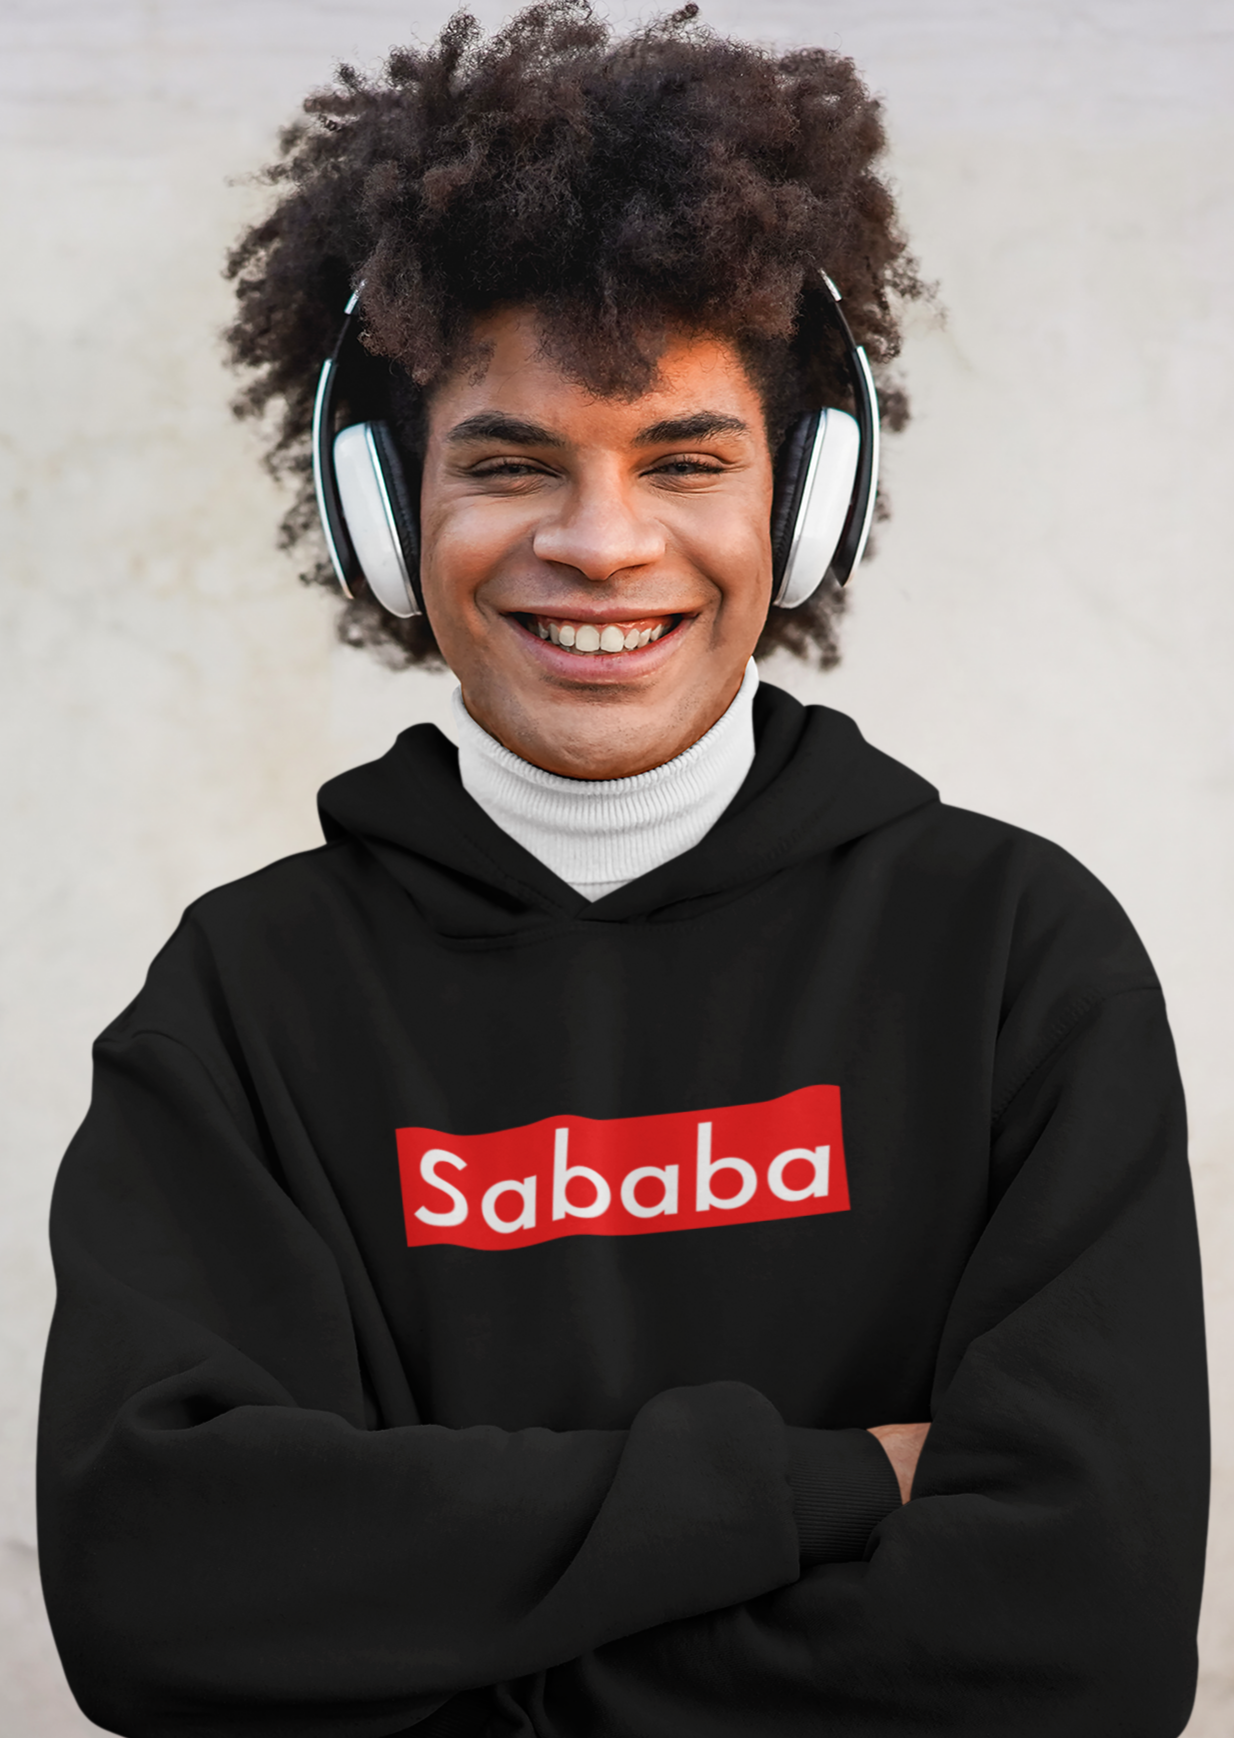 Sababa Logo Men's Premium Hoodie